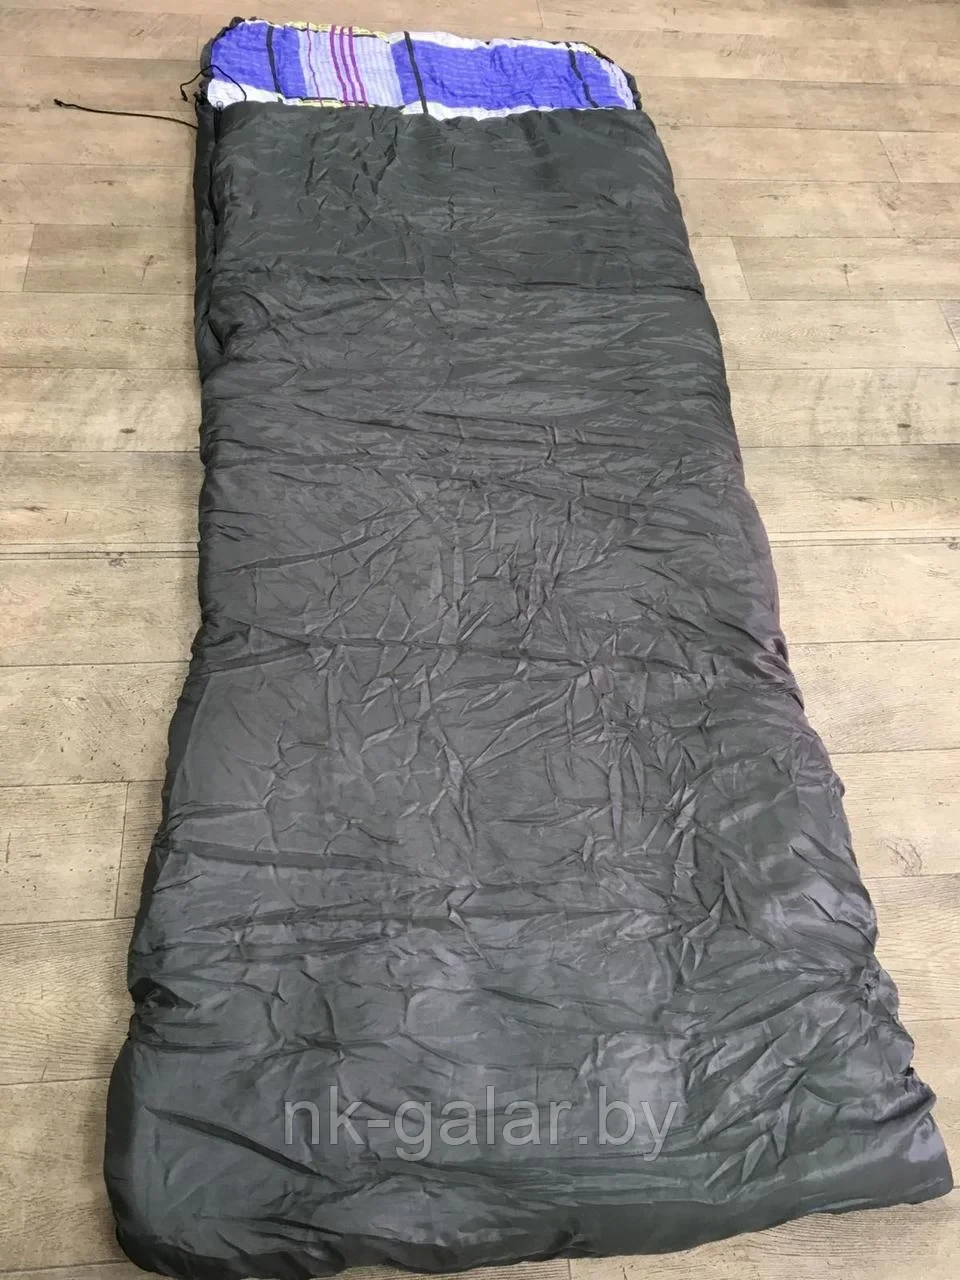 Спальный мешок НК-Галар СП3 300 г/м